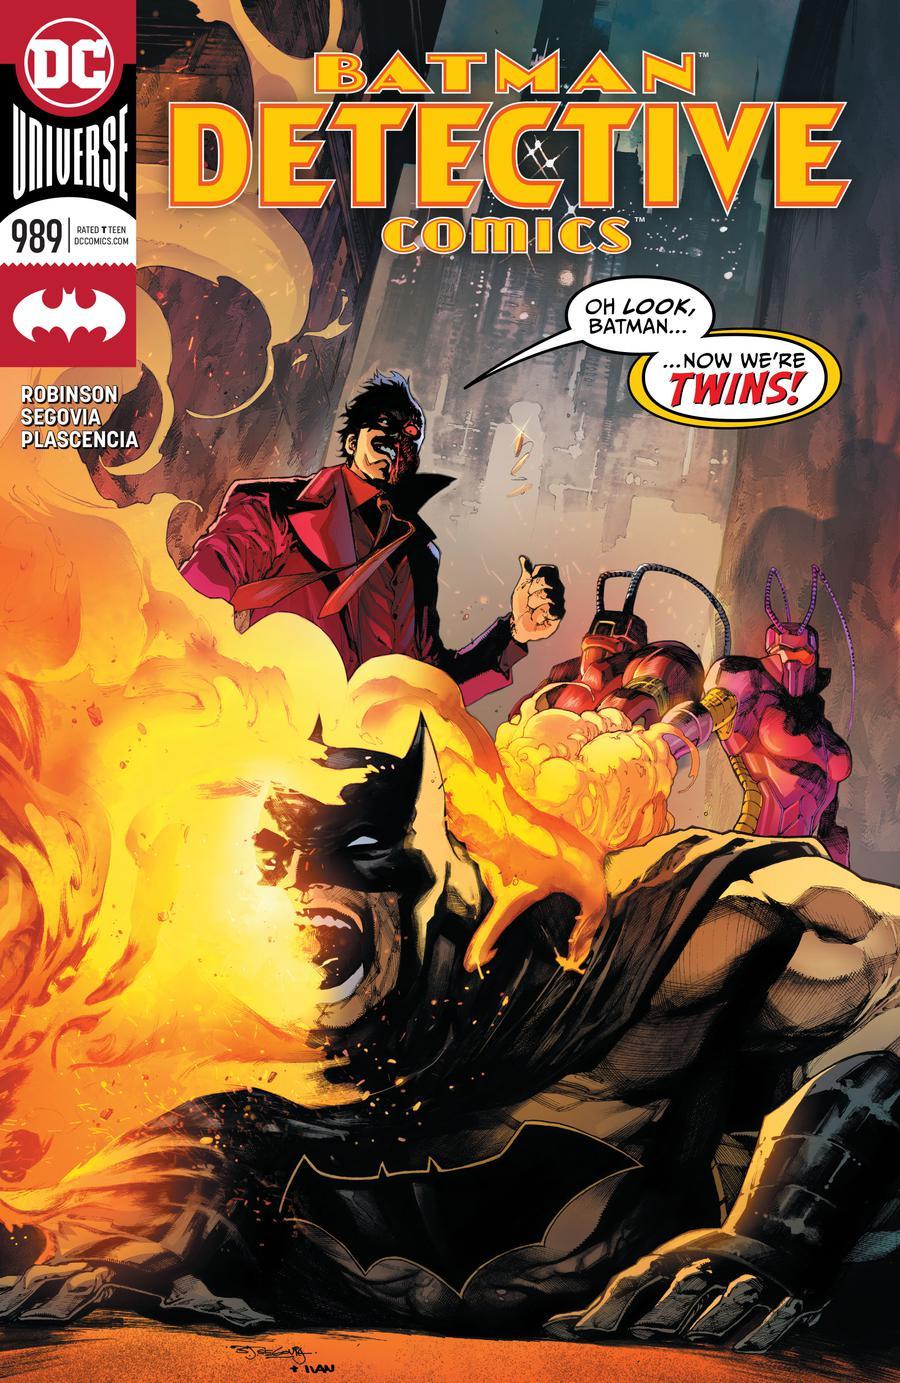 Detective Comics Vol. 2 #989